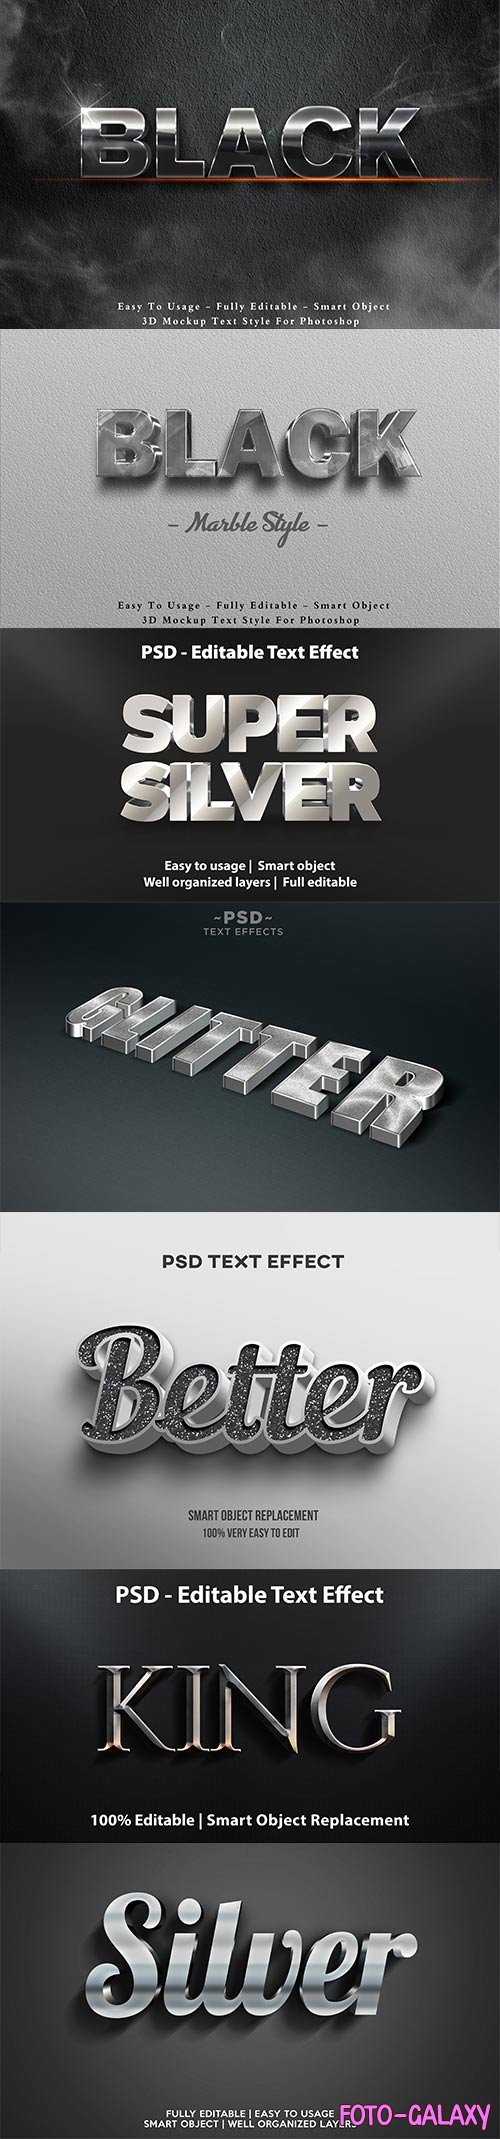 Psd text effect set vol 25